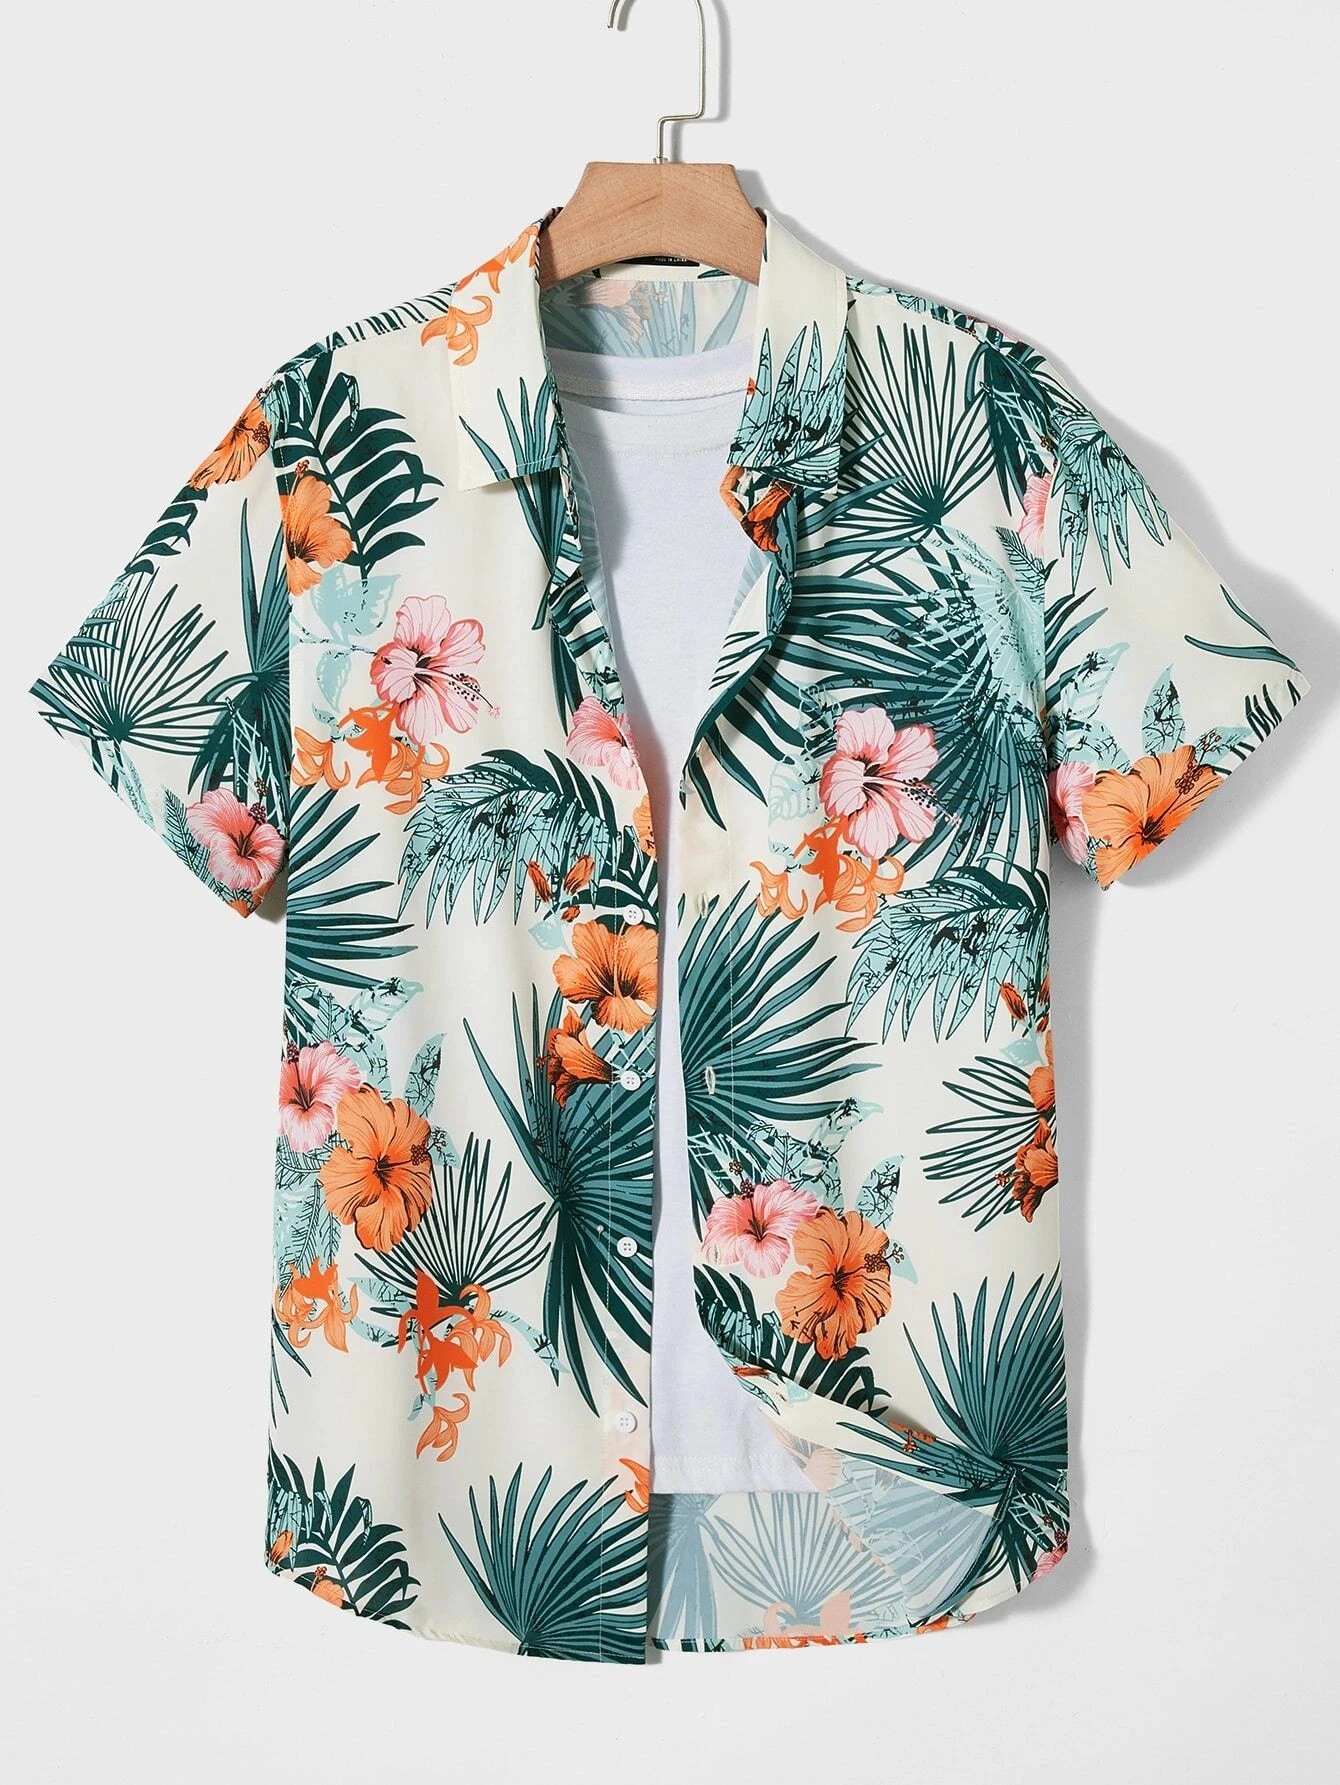 

Hawaiian Botanical Flower Print Men's and Women's Short Sleeve Lapel Shirt Seaside Button-Down Shirt Top